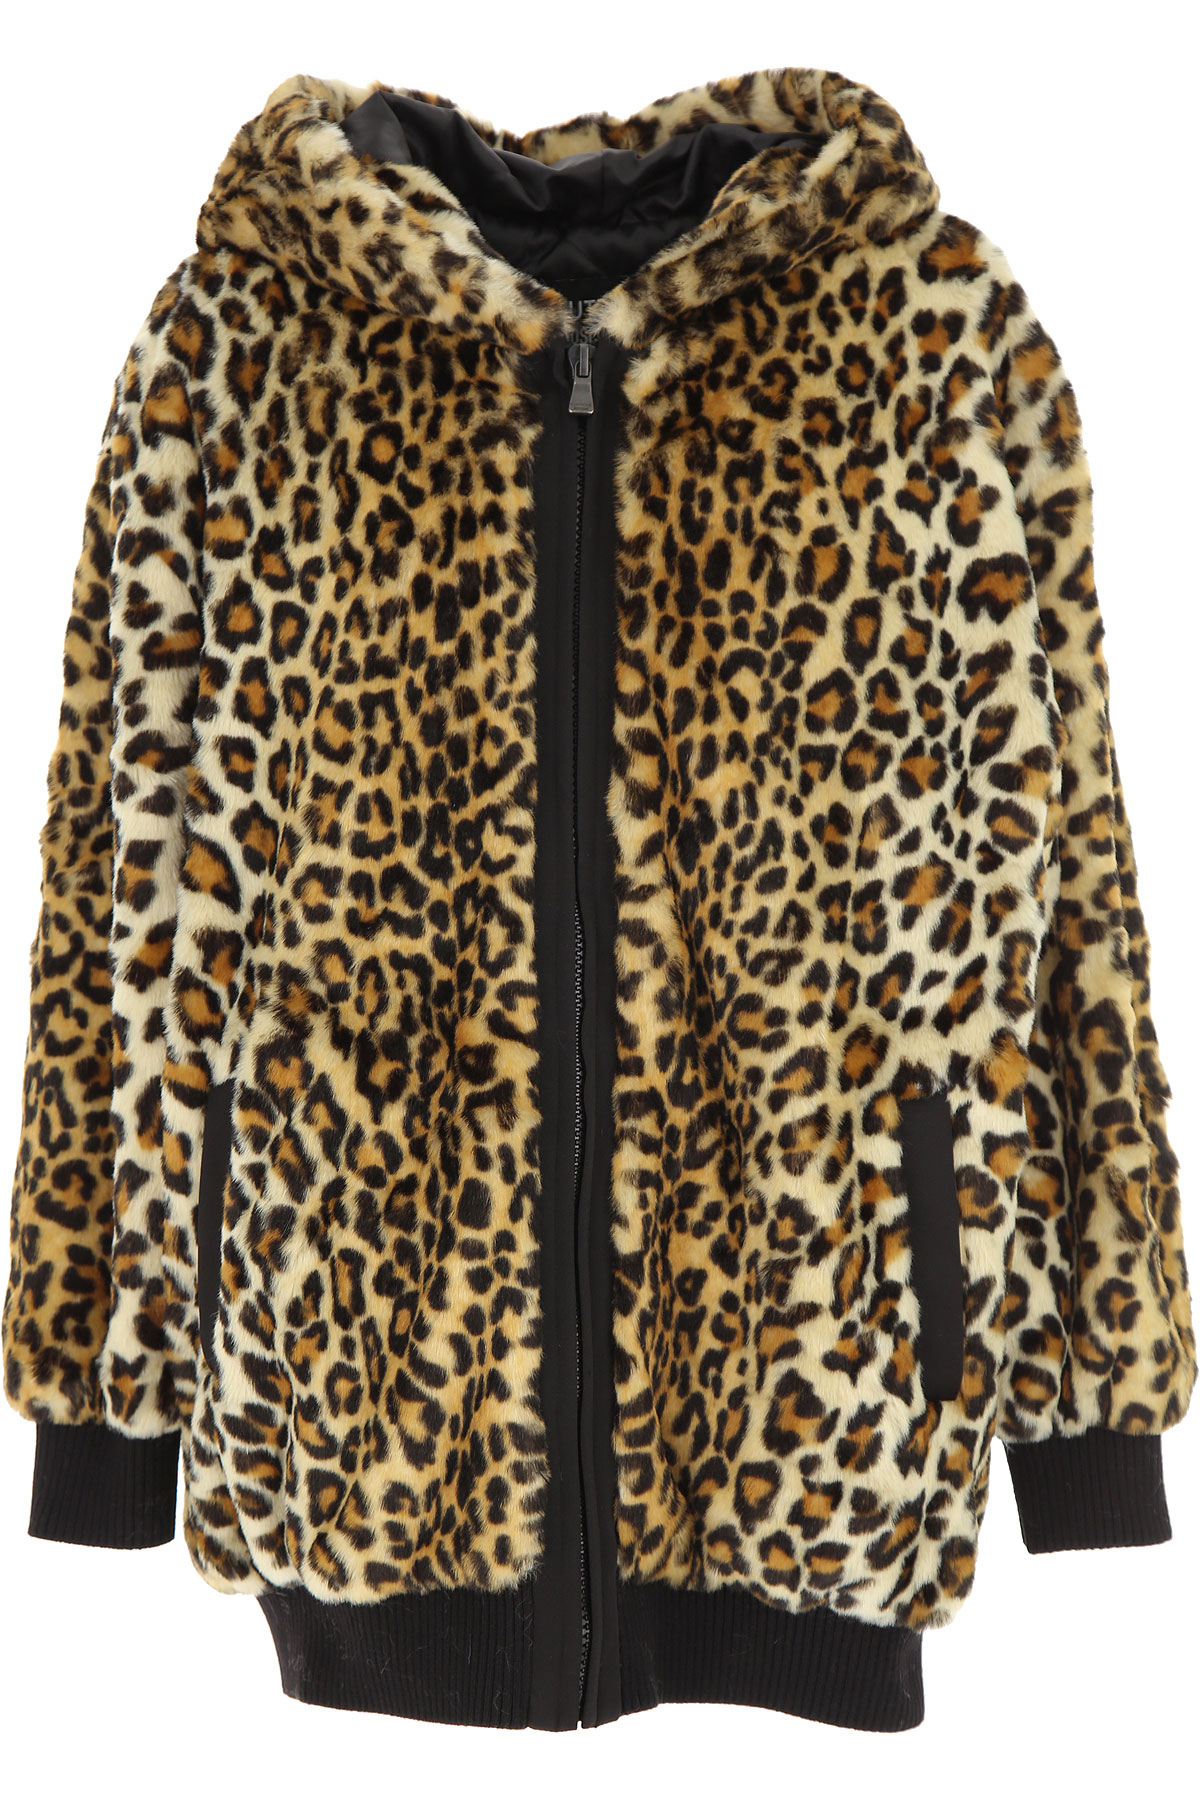 Moschino Jacke für Damen Günstig im Sale, Leopardenfarbig, Polyester, 2017, 40 M